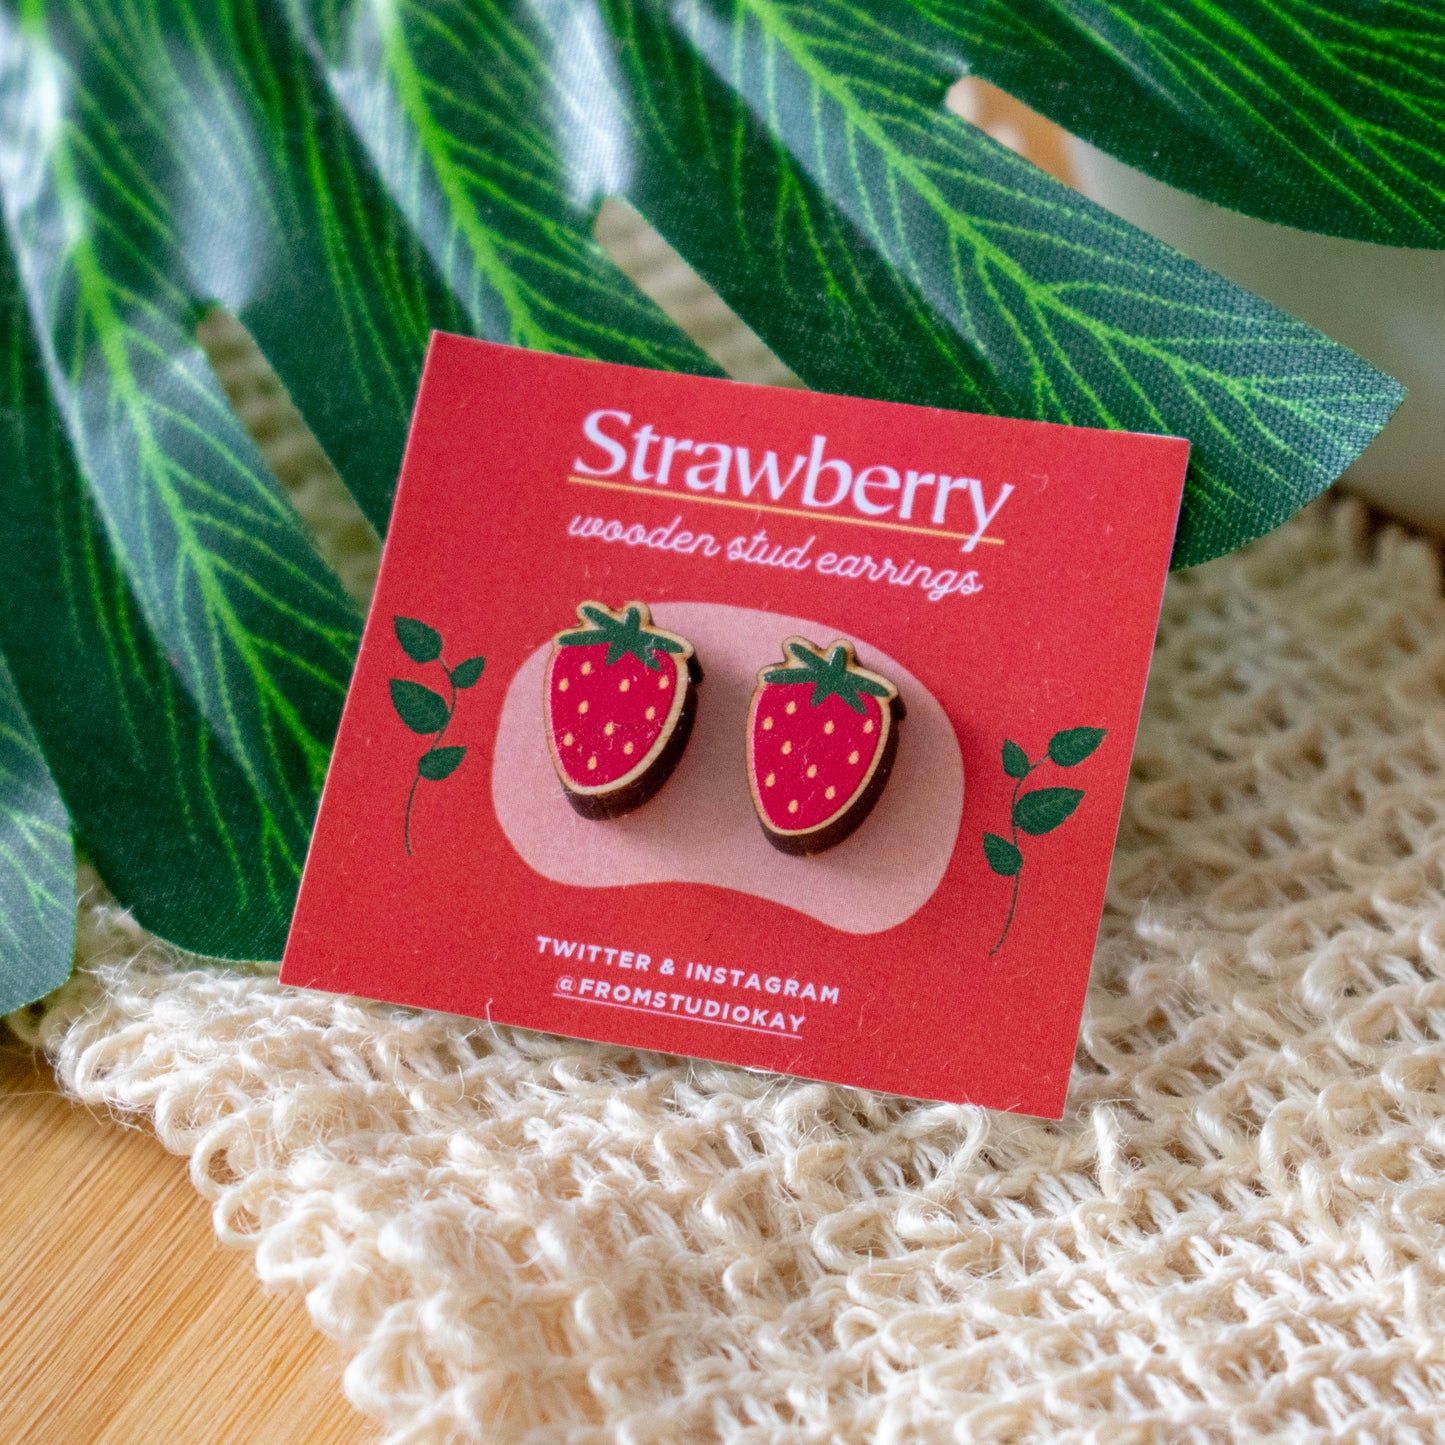 Strawberry wooden stud earrings